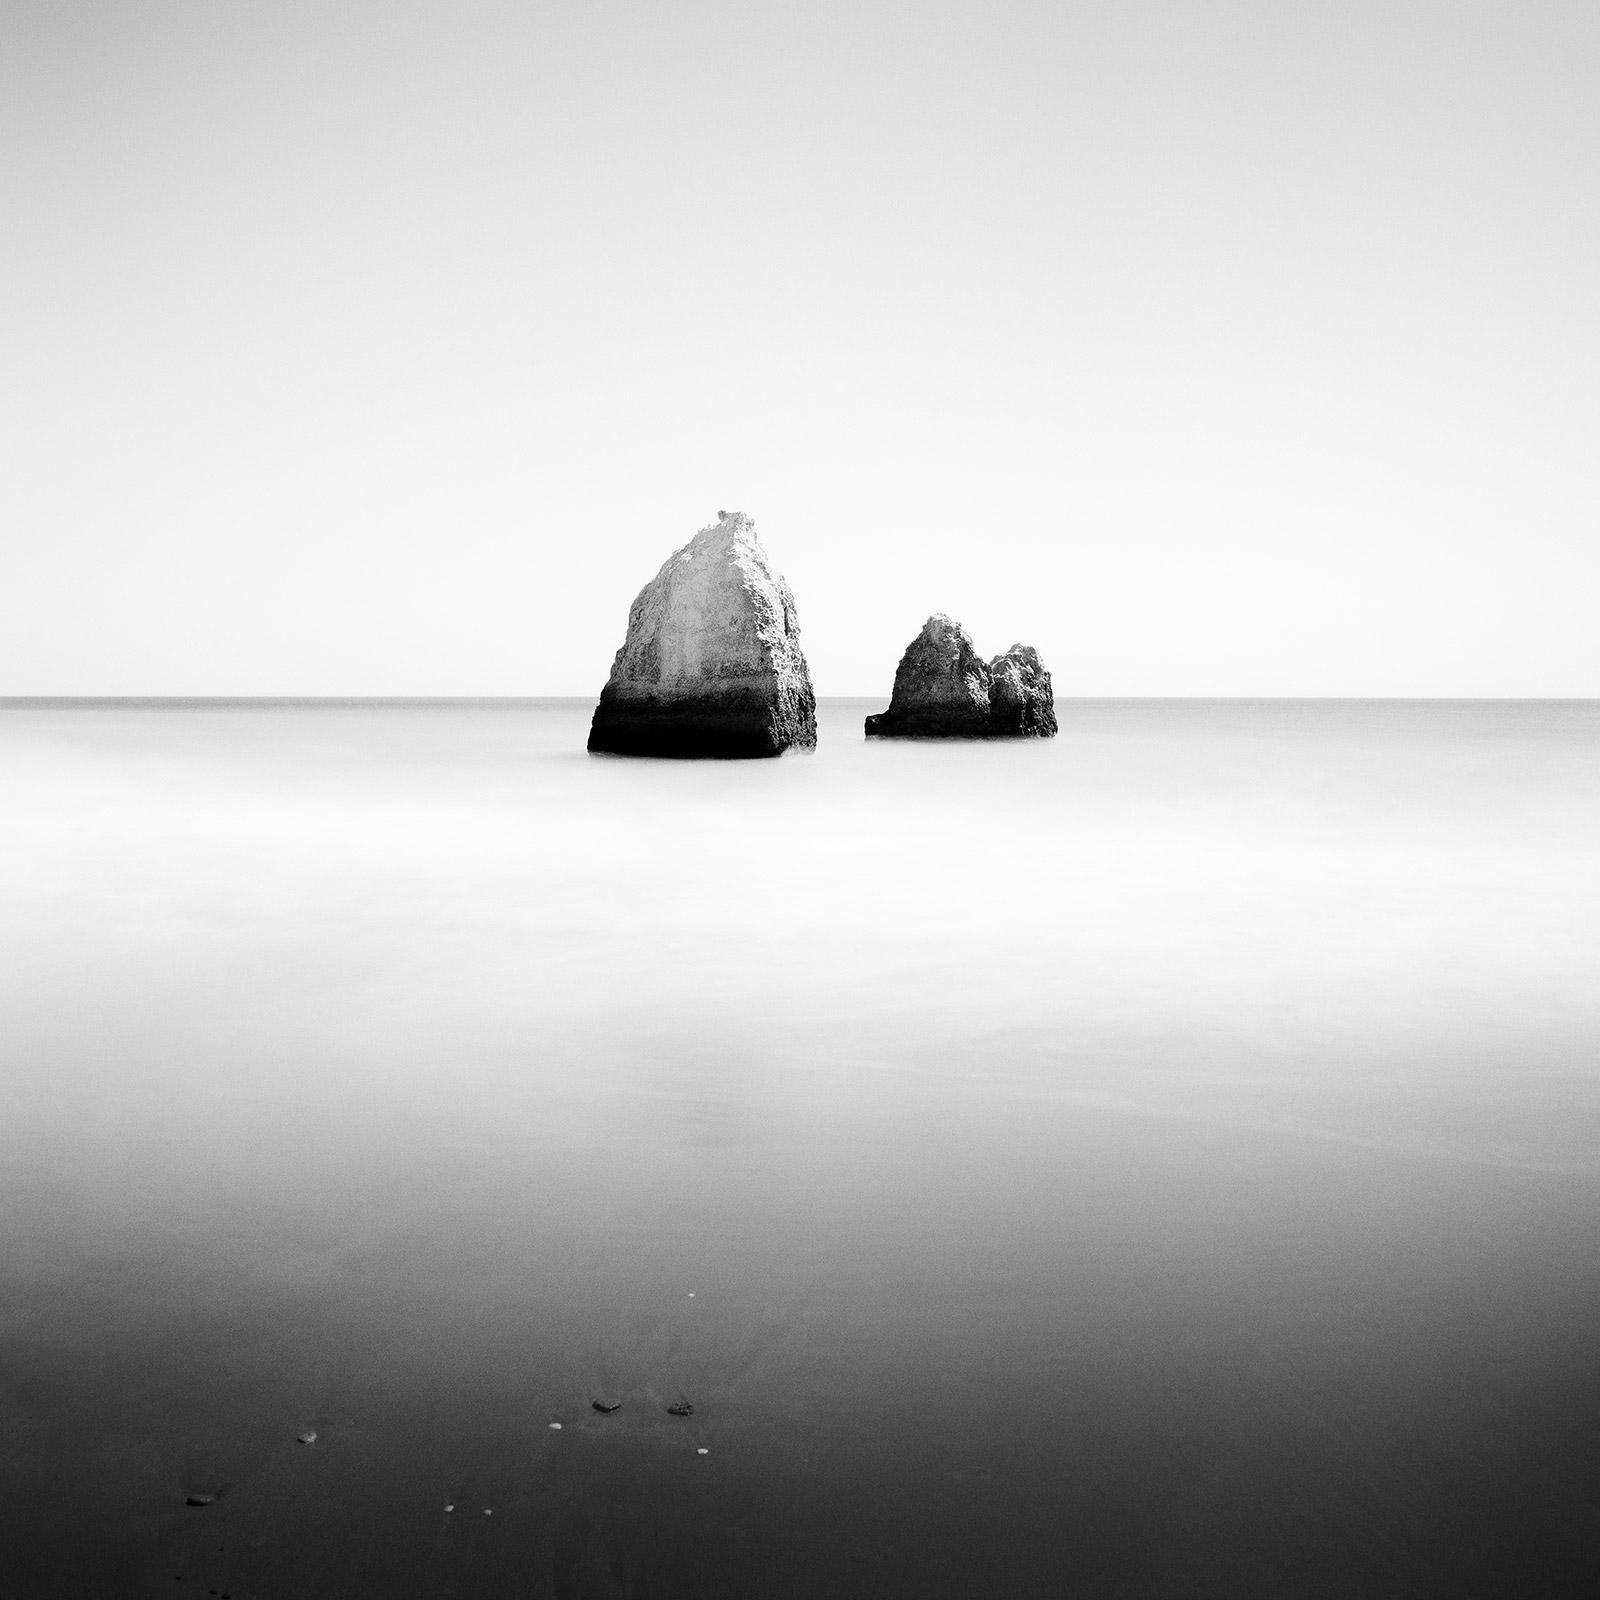 Black and White Photograph Gerald Berghammer - Pyramide engloutie, Espagne, photographie d'art minimaliste en noir et blanc, paysage